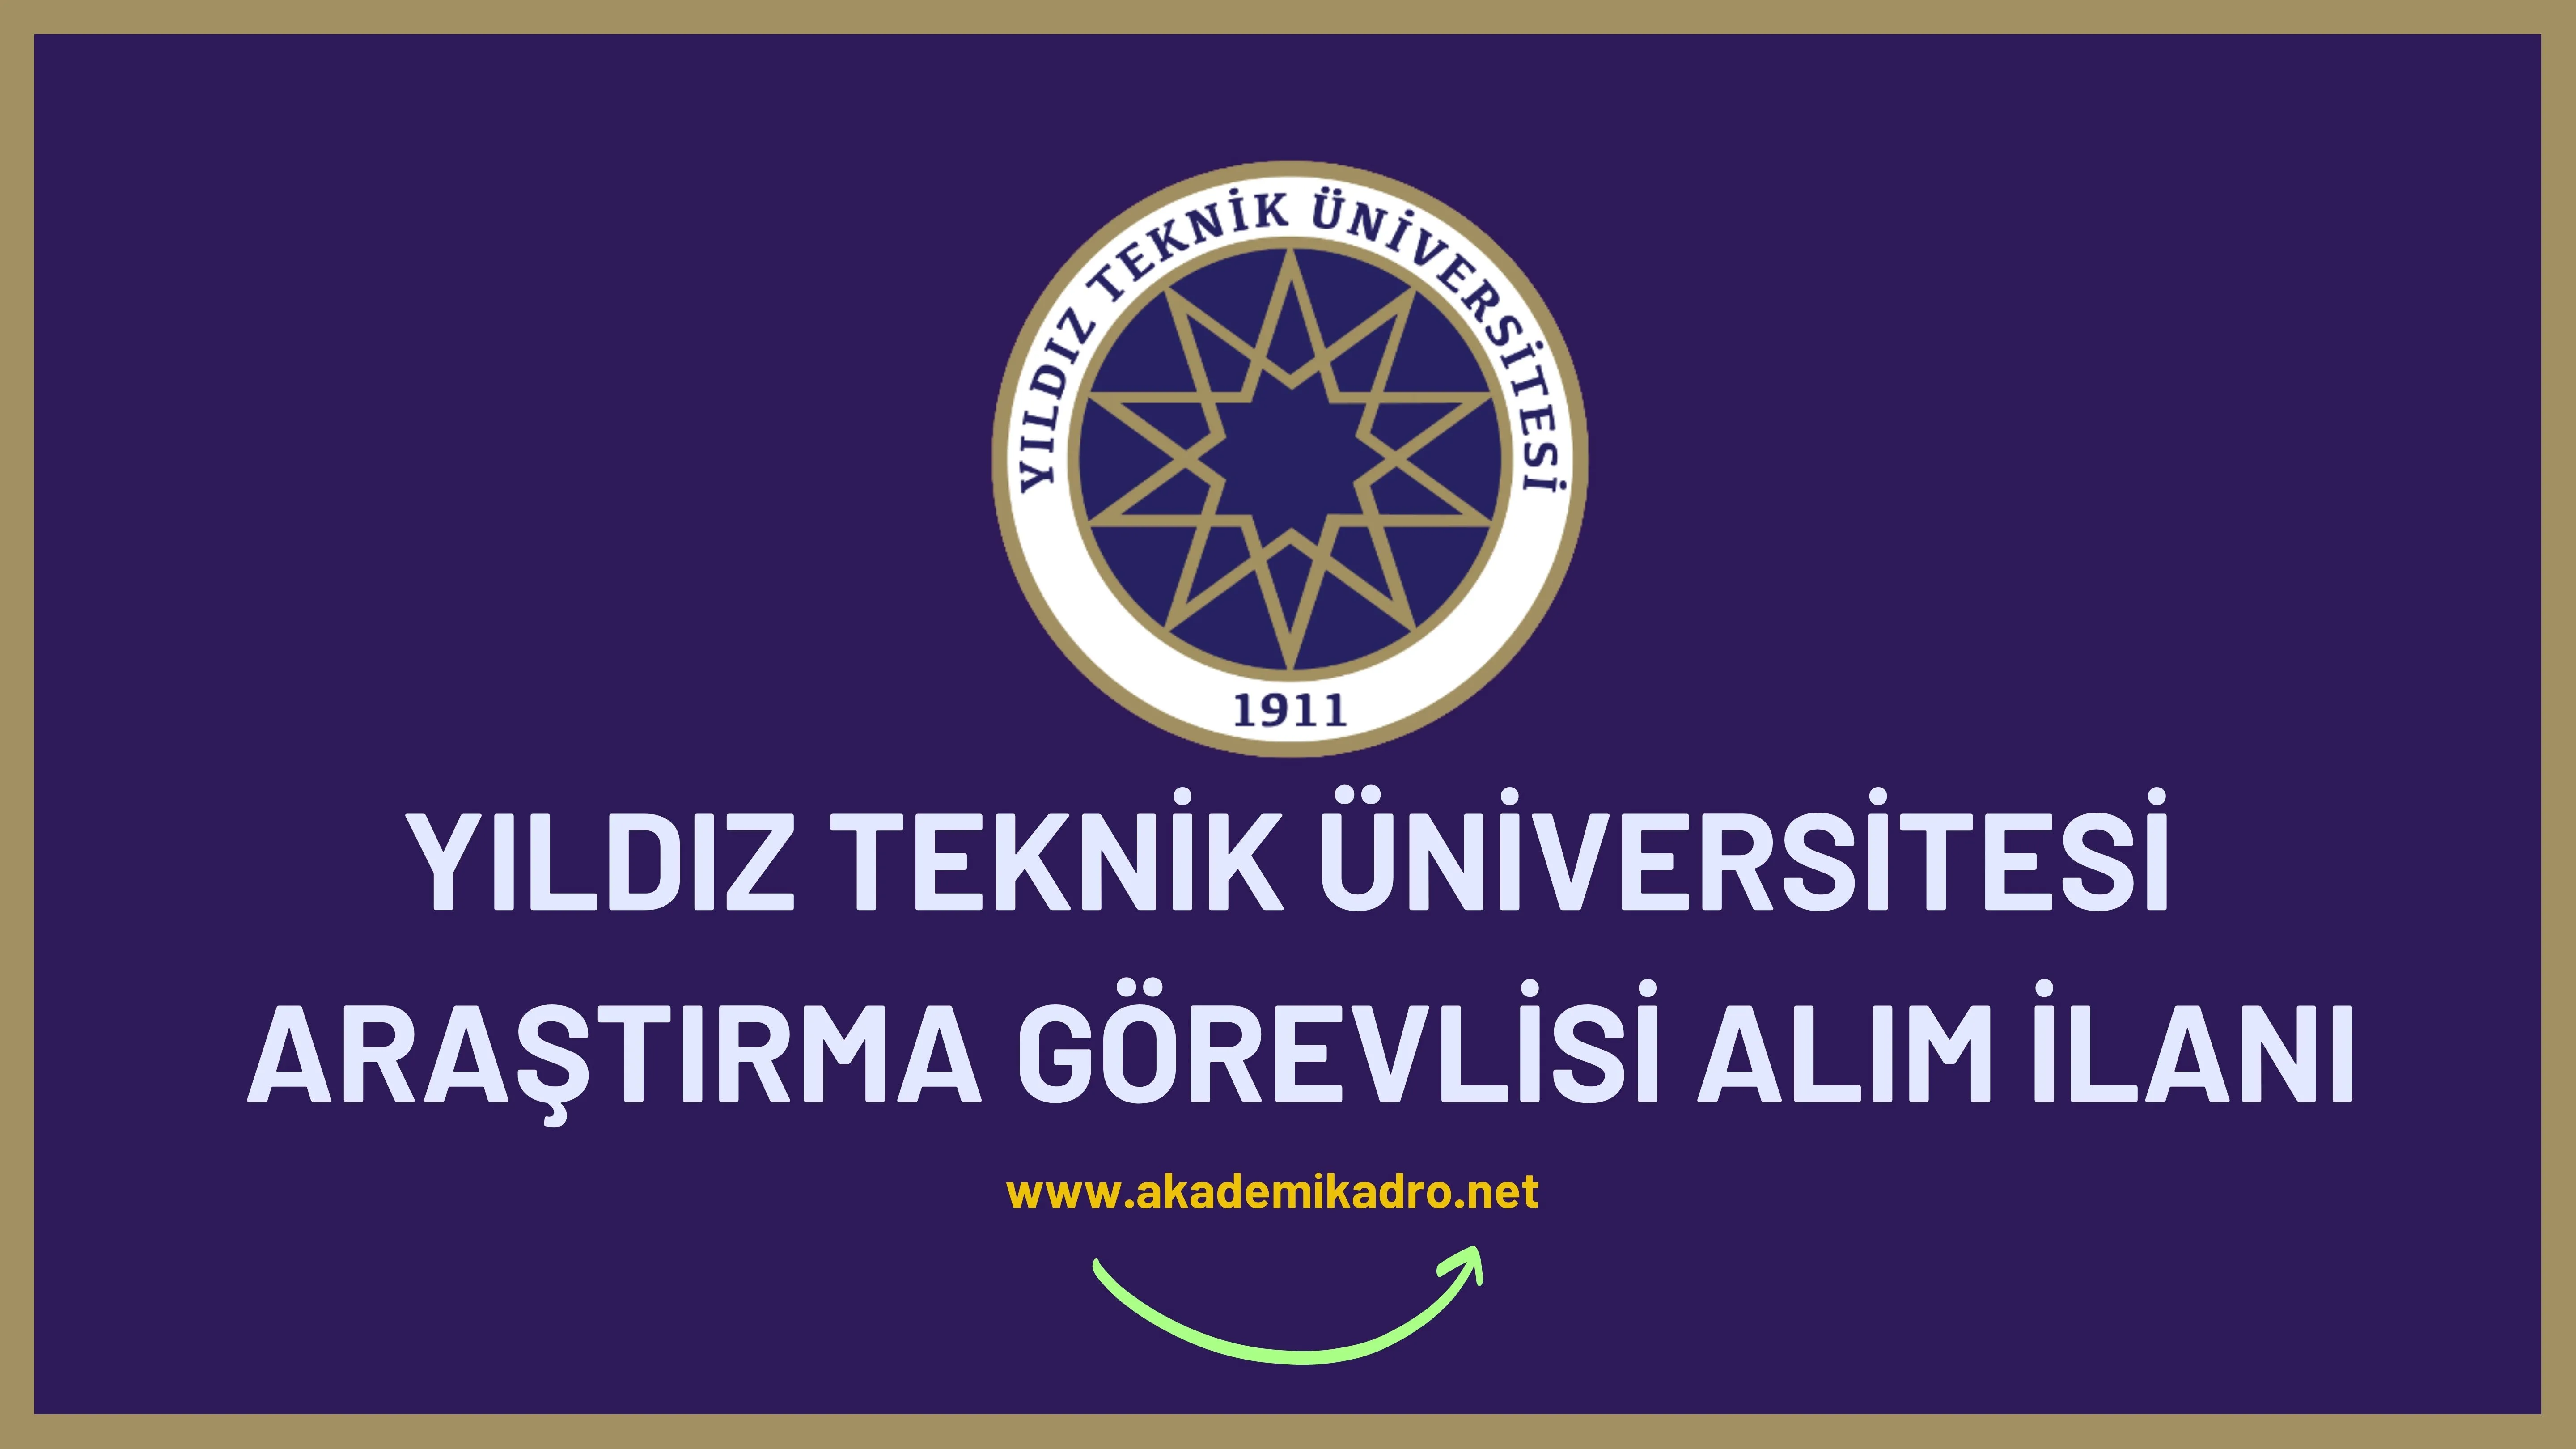 Yıldız Teknik Üniversitesi 10 Araştırma Görevlisi alacaktır. Son başvuru tarihi 28 Eylül 2022